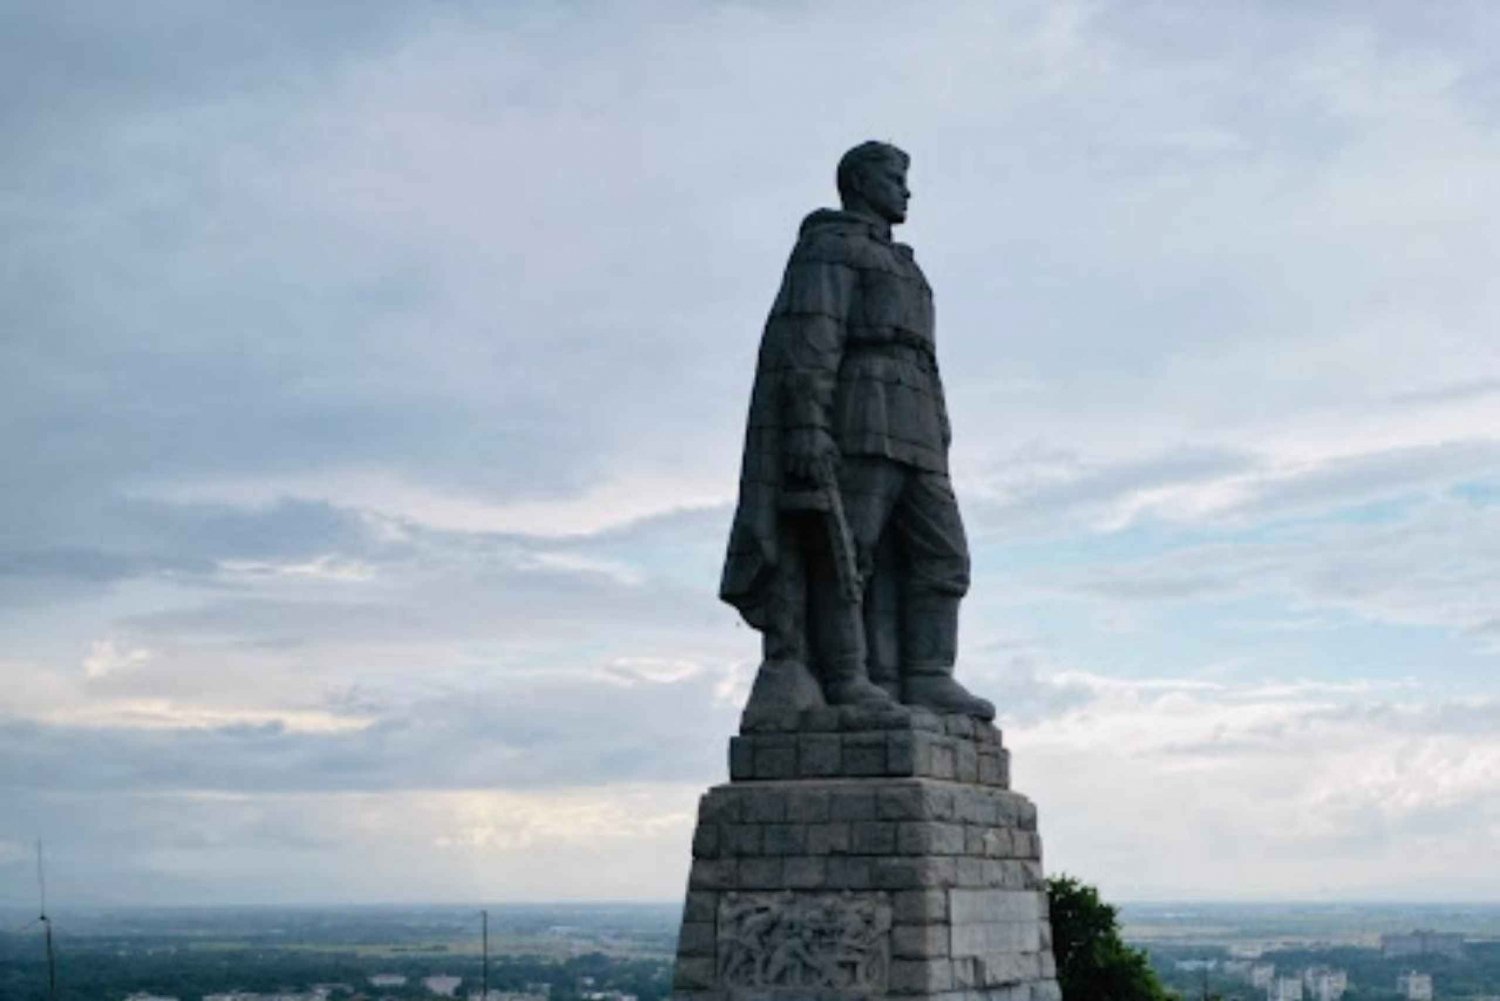 Plovdiv Communist Walking Tour Soviet Landmarks